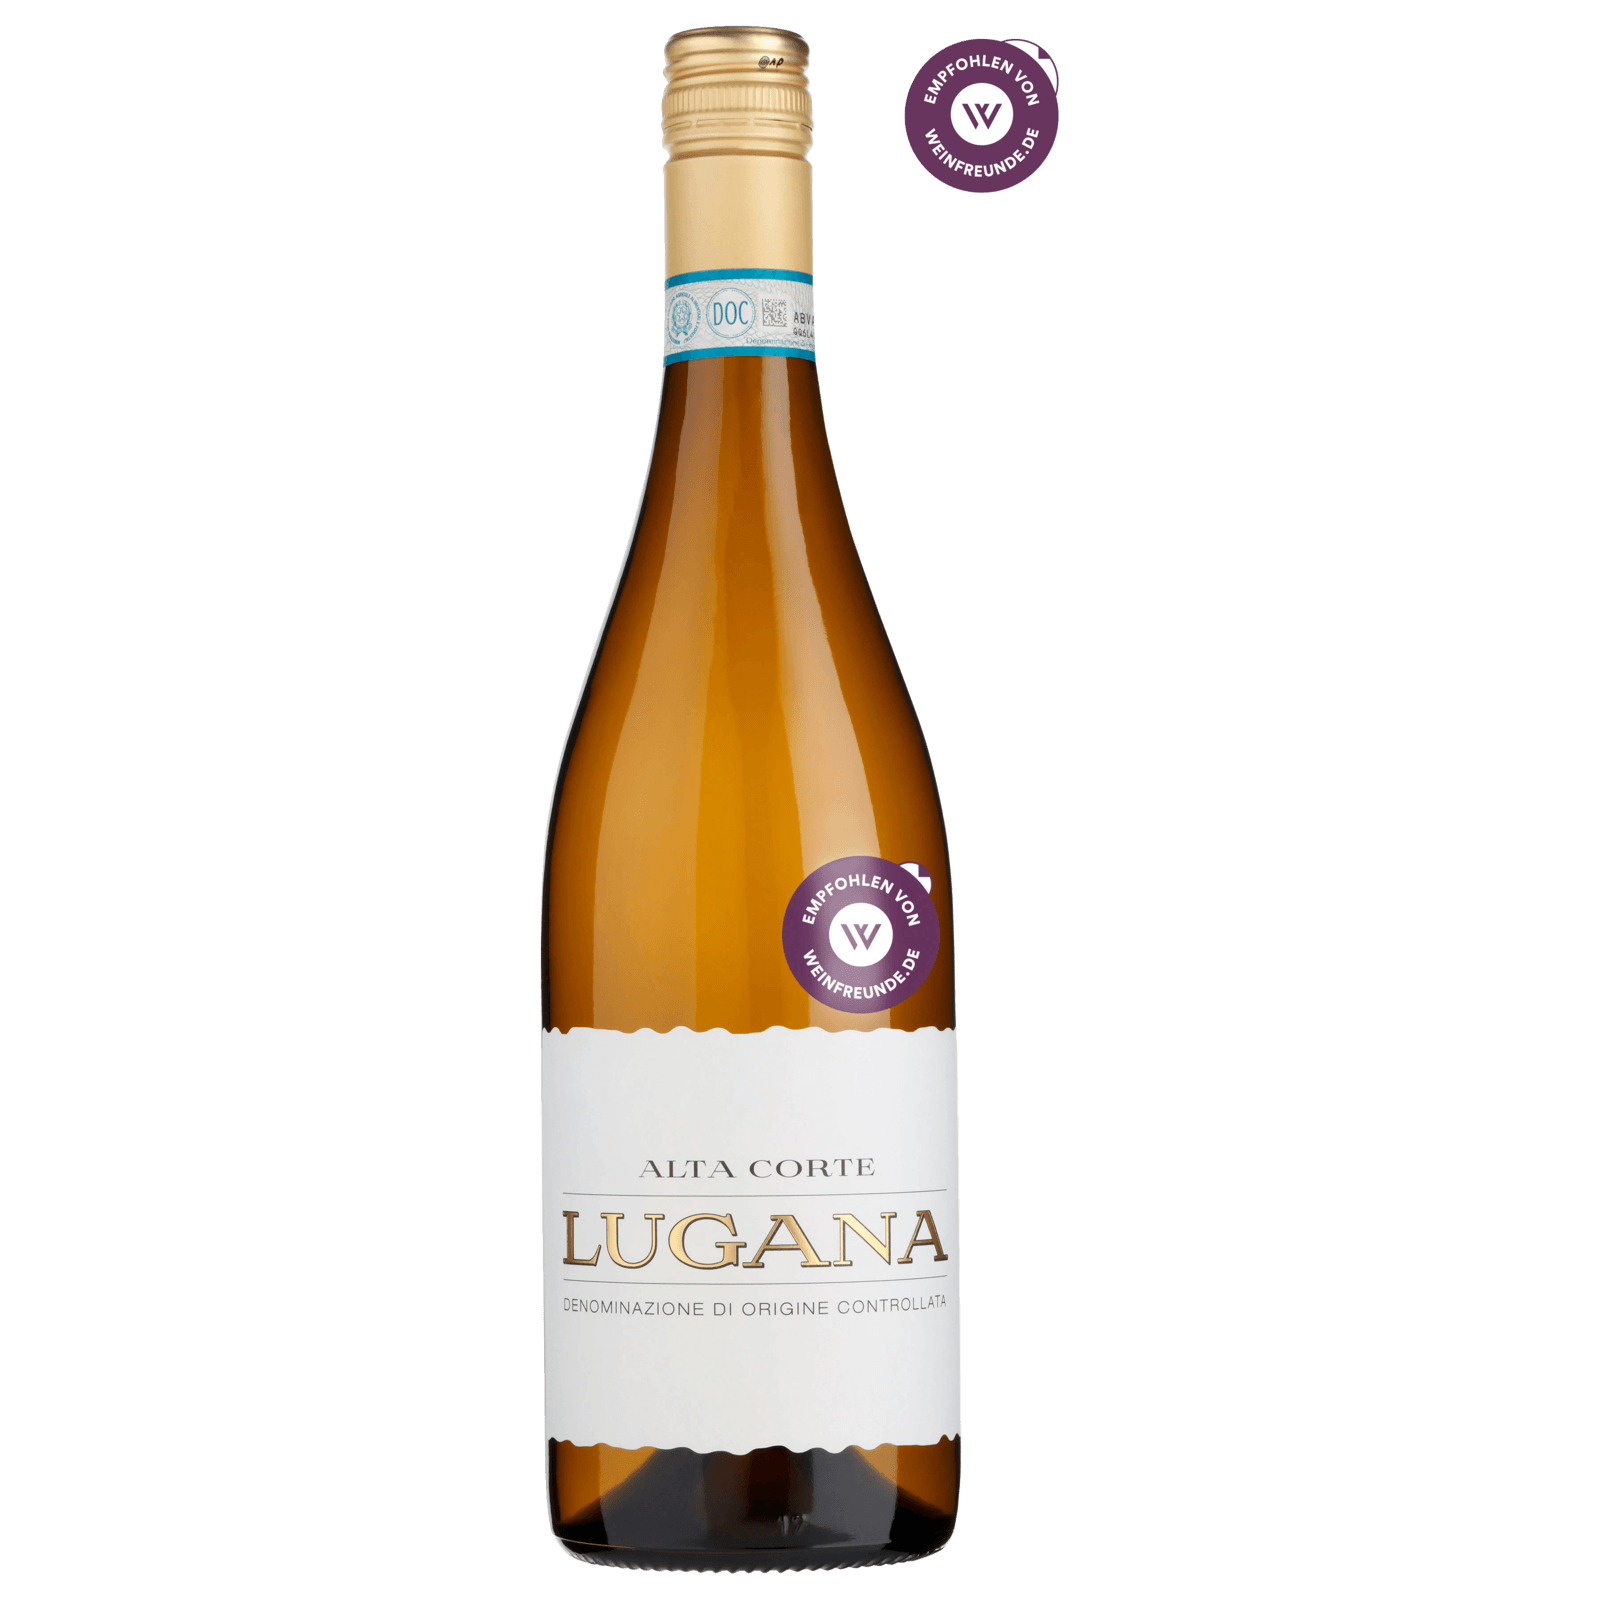 Alta Corte Weißwein Lugana bestellen! 0,75l REWE trocken DOC online bei